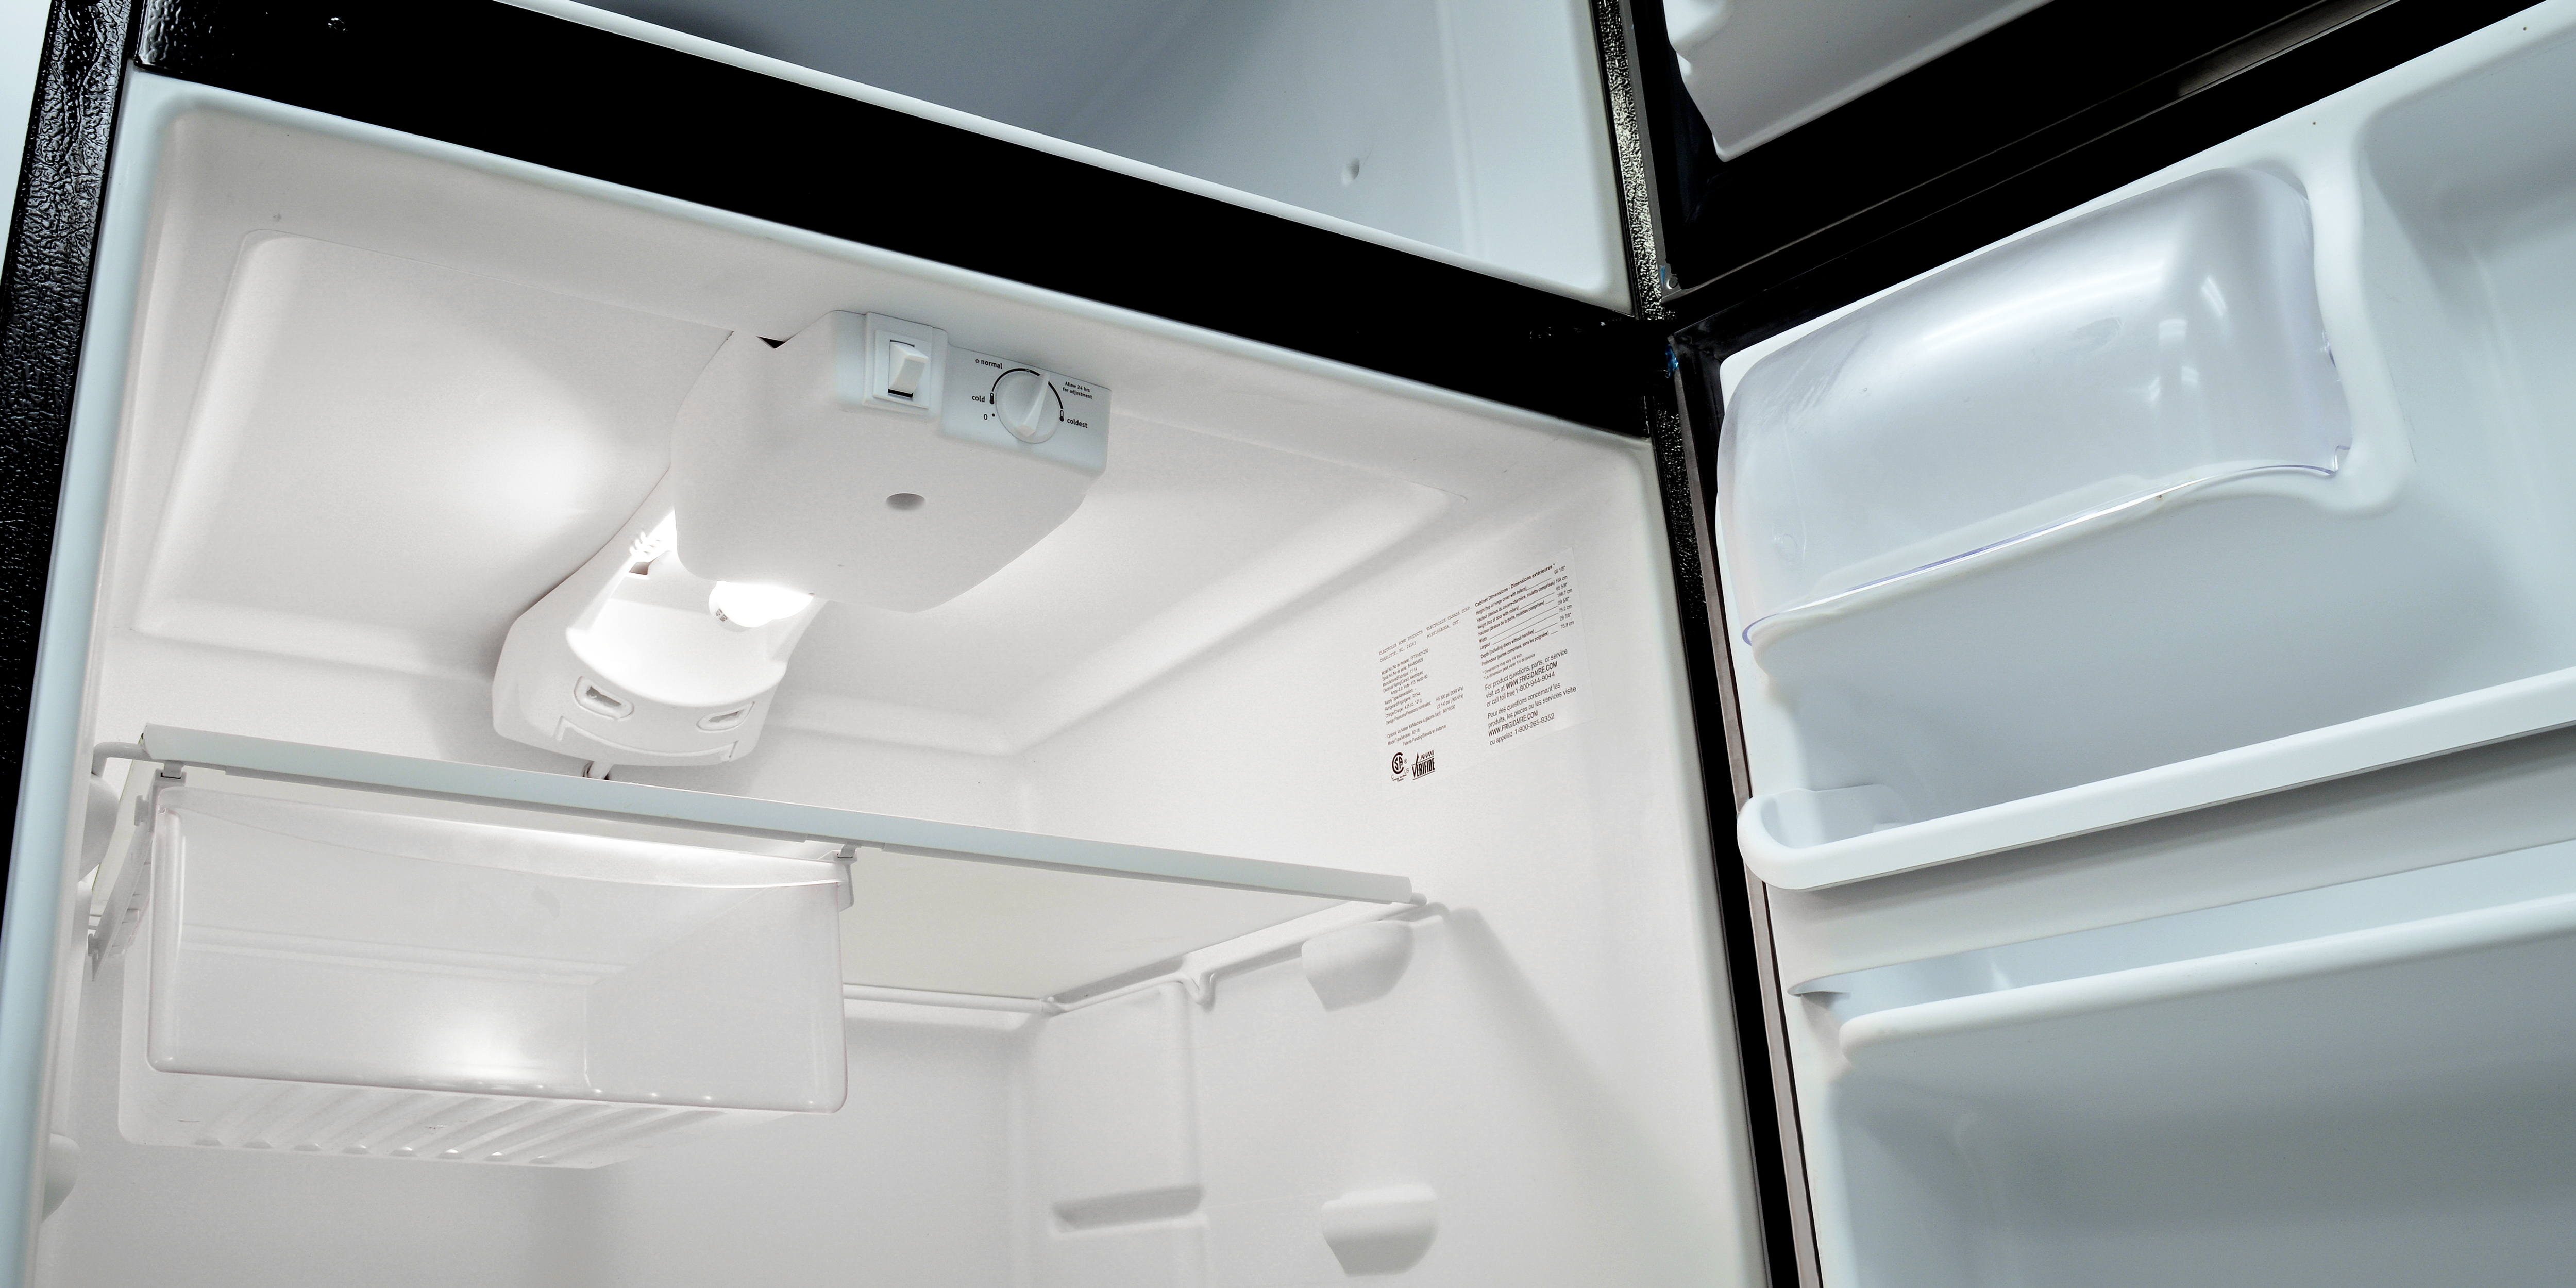 Нужно размораживать холодильник no frost. Холодильник Индезит ноу Фрост. Холодильник Атлант ноу Фрост двухкамерный. Холодильник Frigidaire fpd515t. Холодильник Атлант 4721-101 размораживаем морозильное отделение.